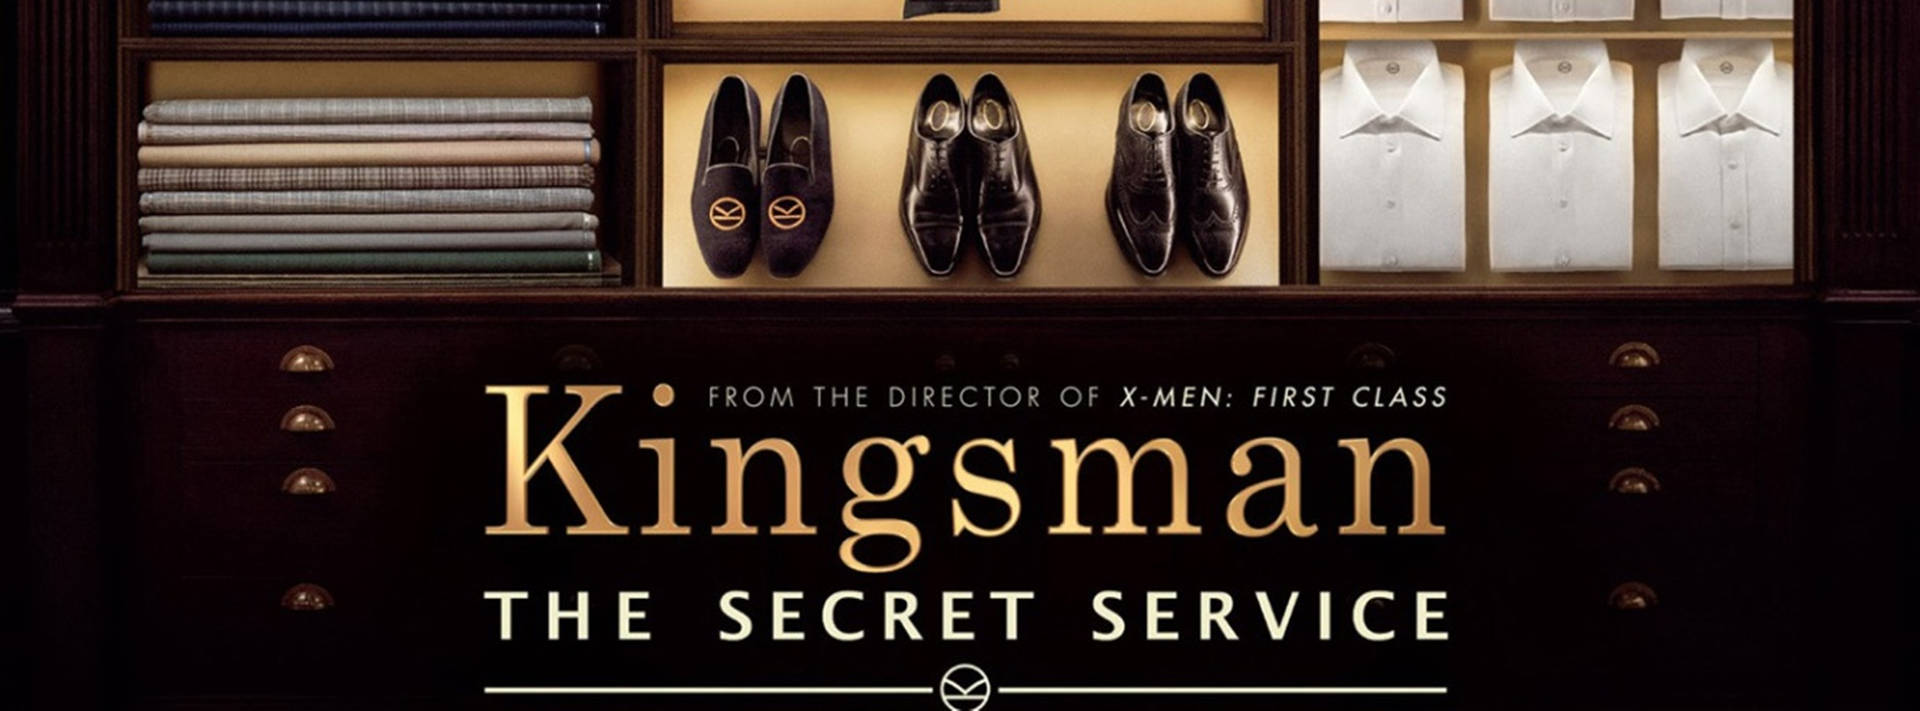 Kingsman The Secret Service Clothes Shoes Wallpaper